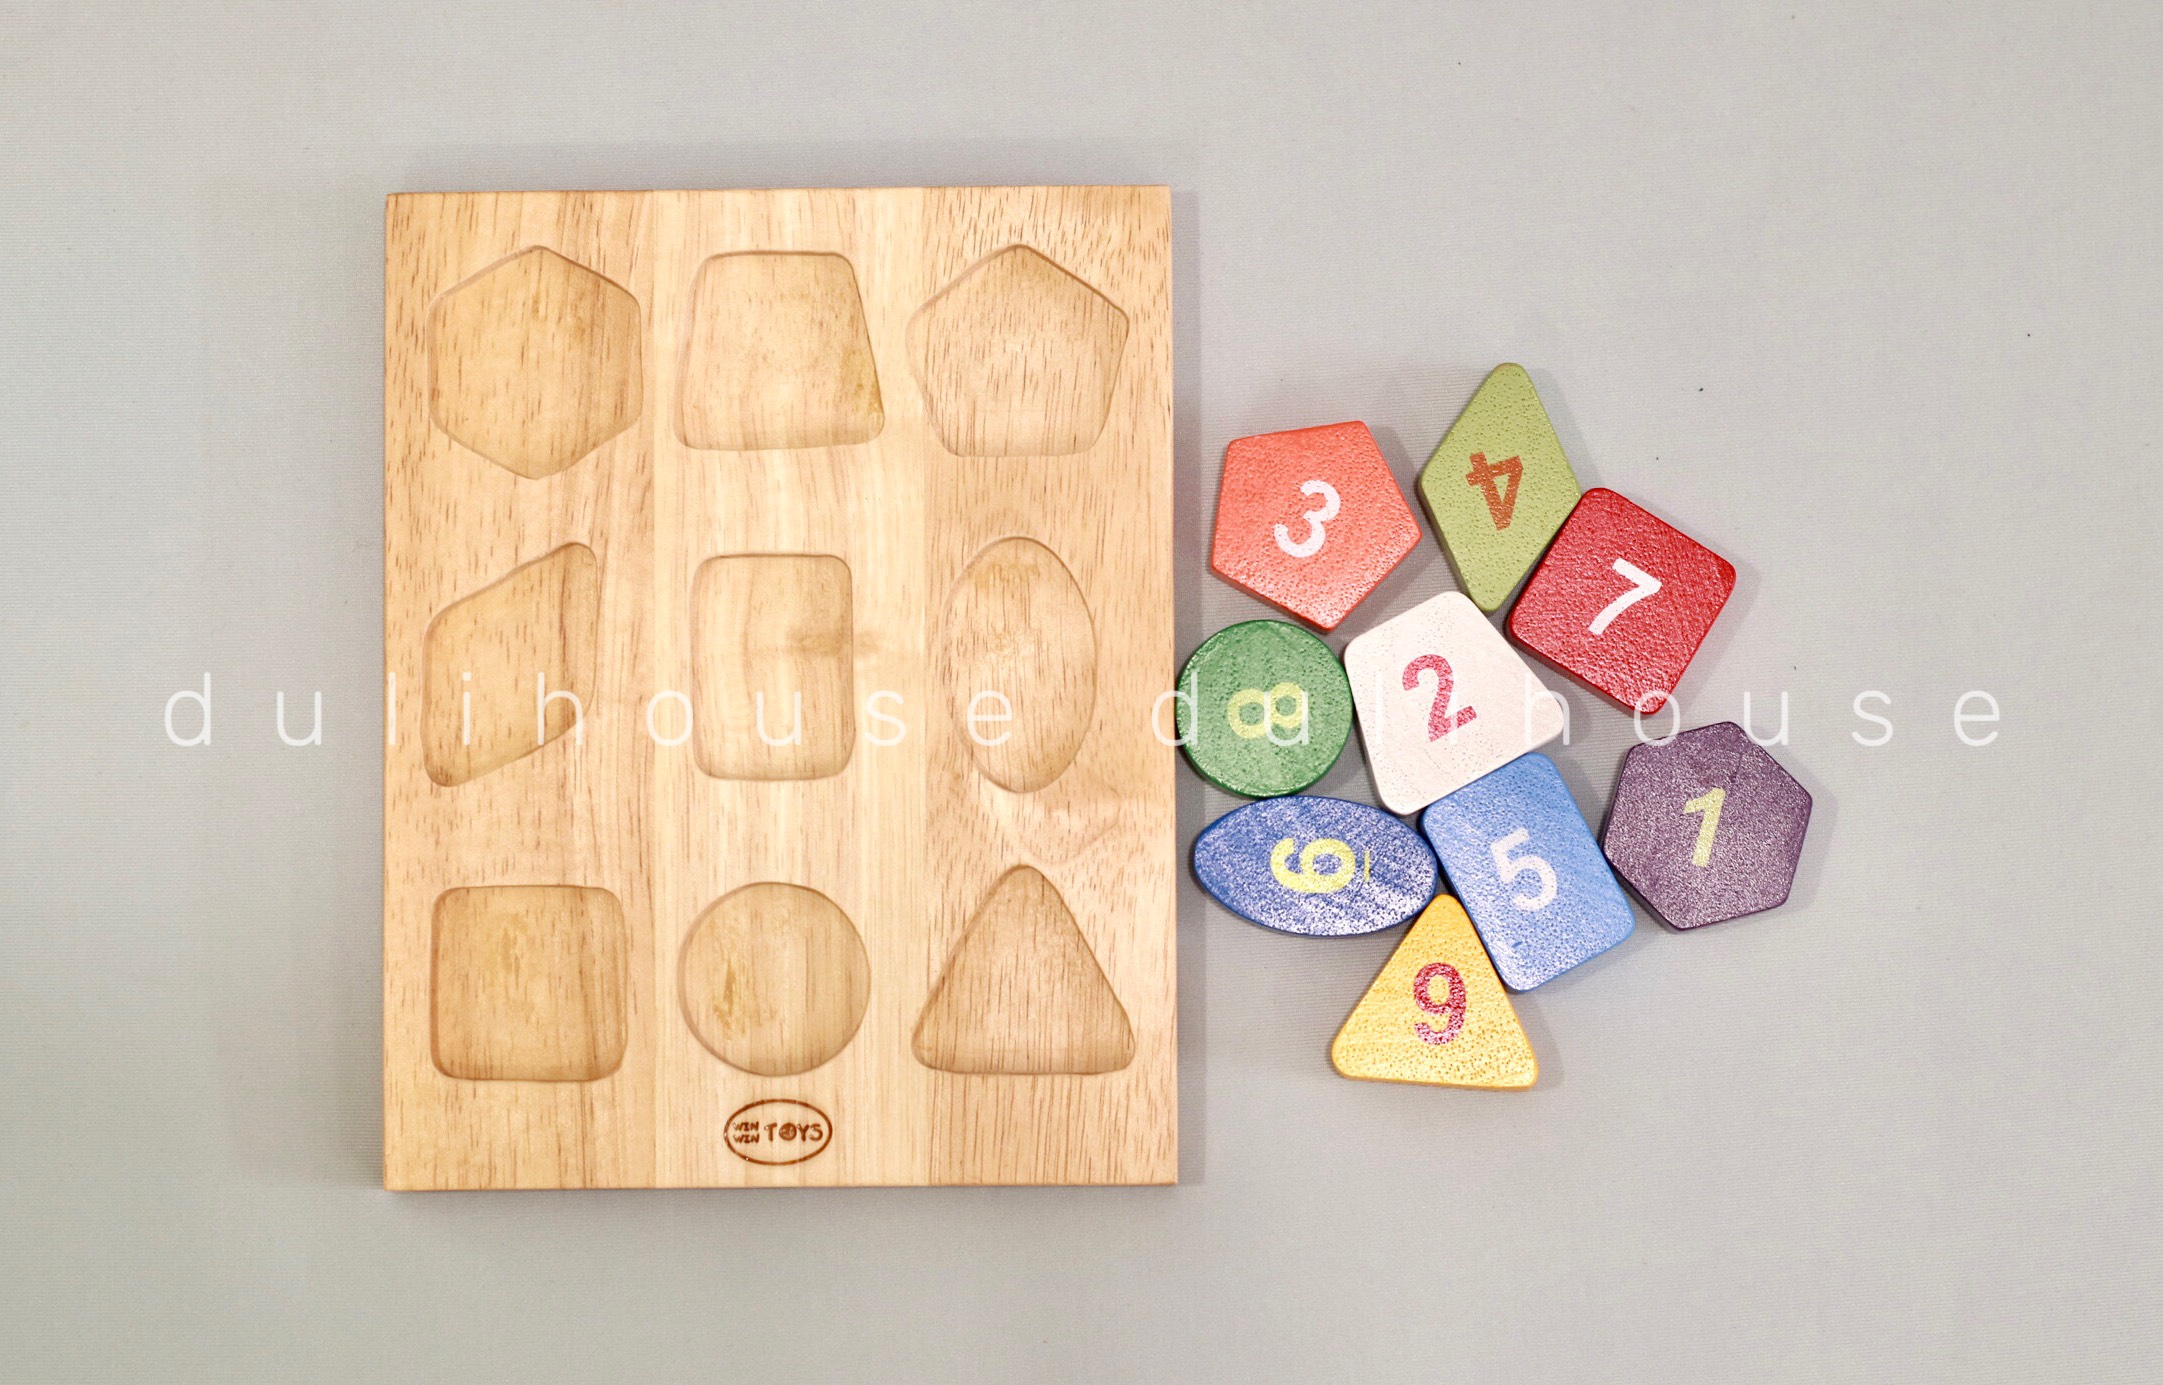 Đồ chơi gỗ cao cấp Bộ xếp khối hình học và số từ 1-9, phát triển tư duy, khả năng khéo léo của bé, hàng Việt Nam